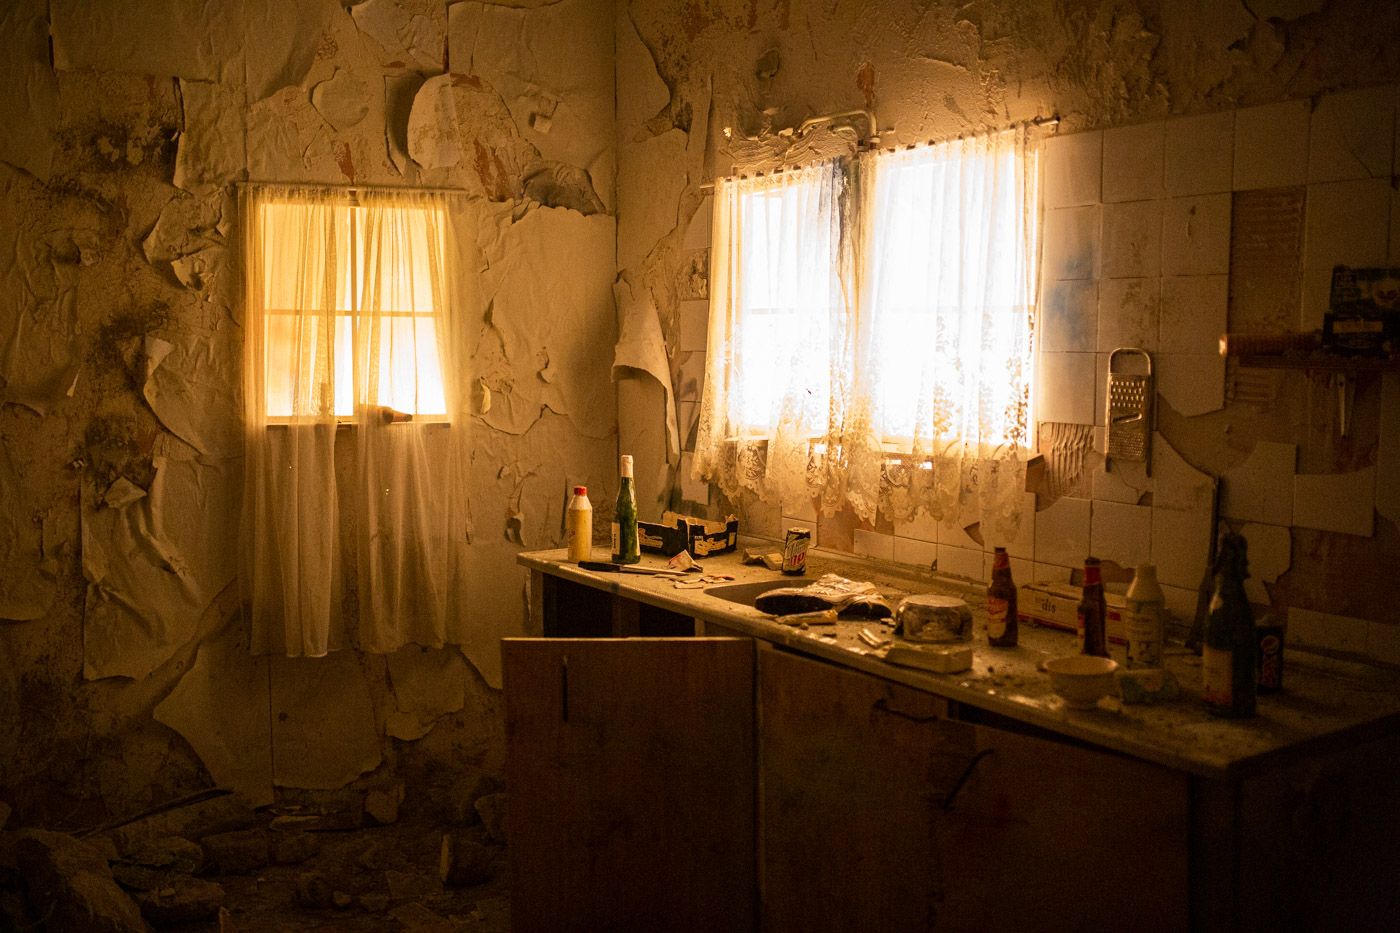 Eén van de kamers in het doolhof, wat een stoffige vernielde keuken is. Door de ramen van keuken komt er een schemerlicht binnen.